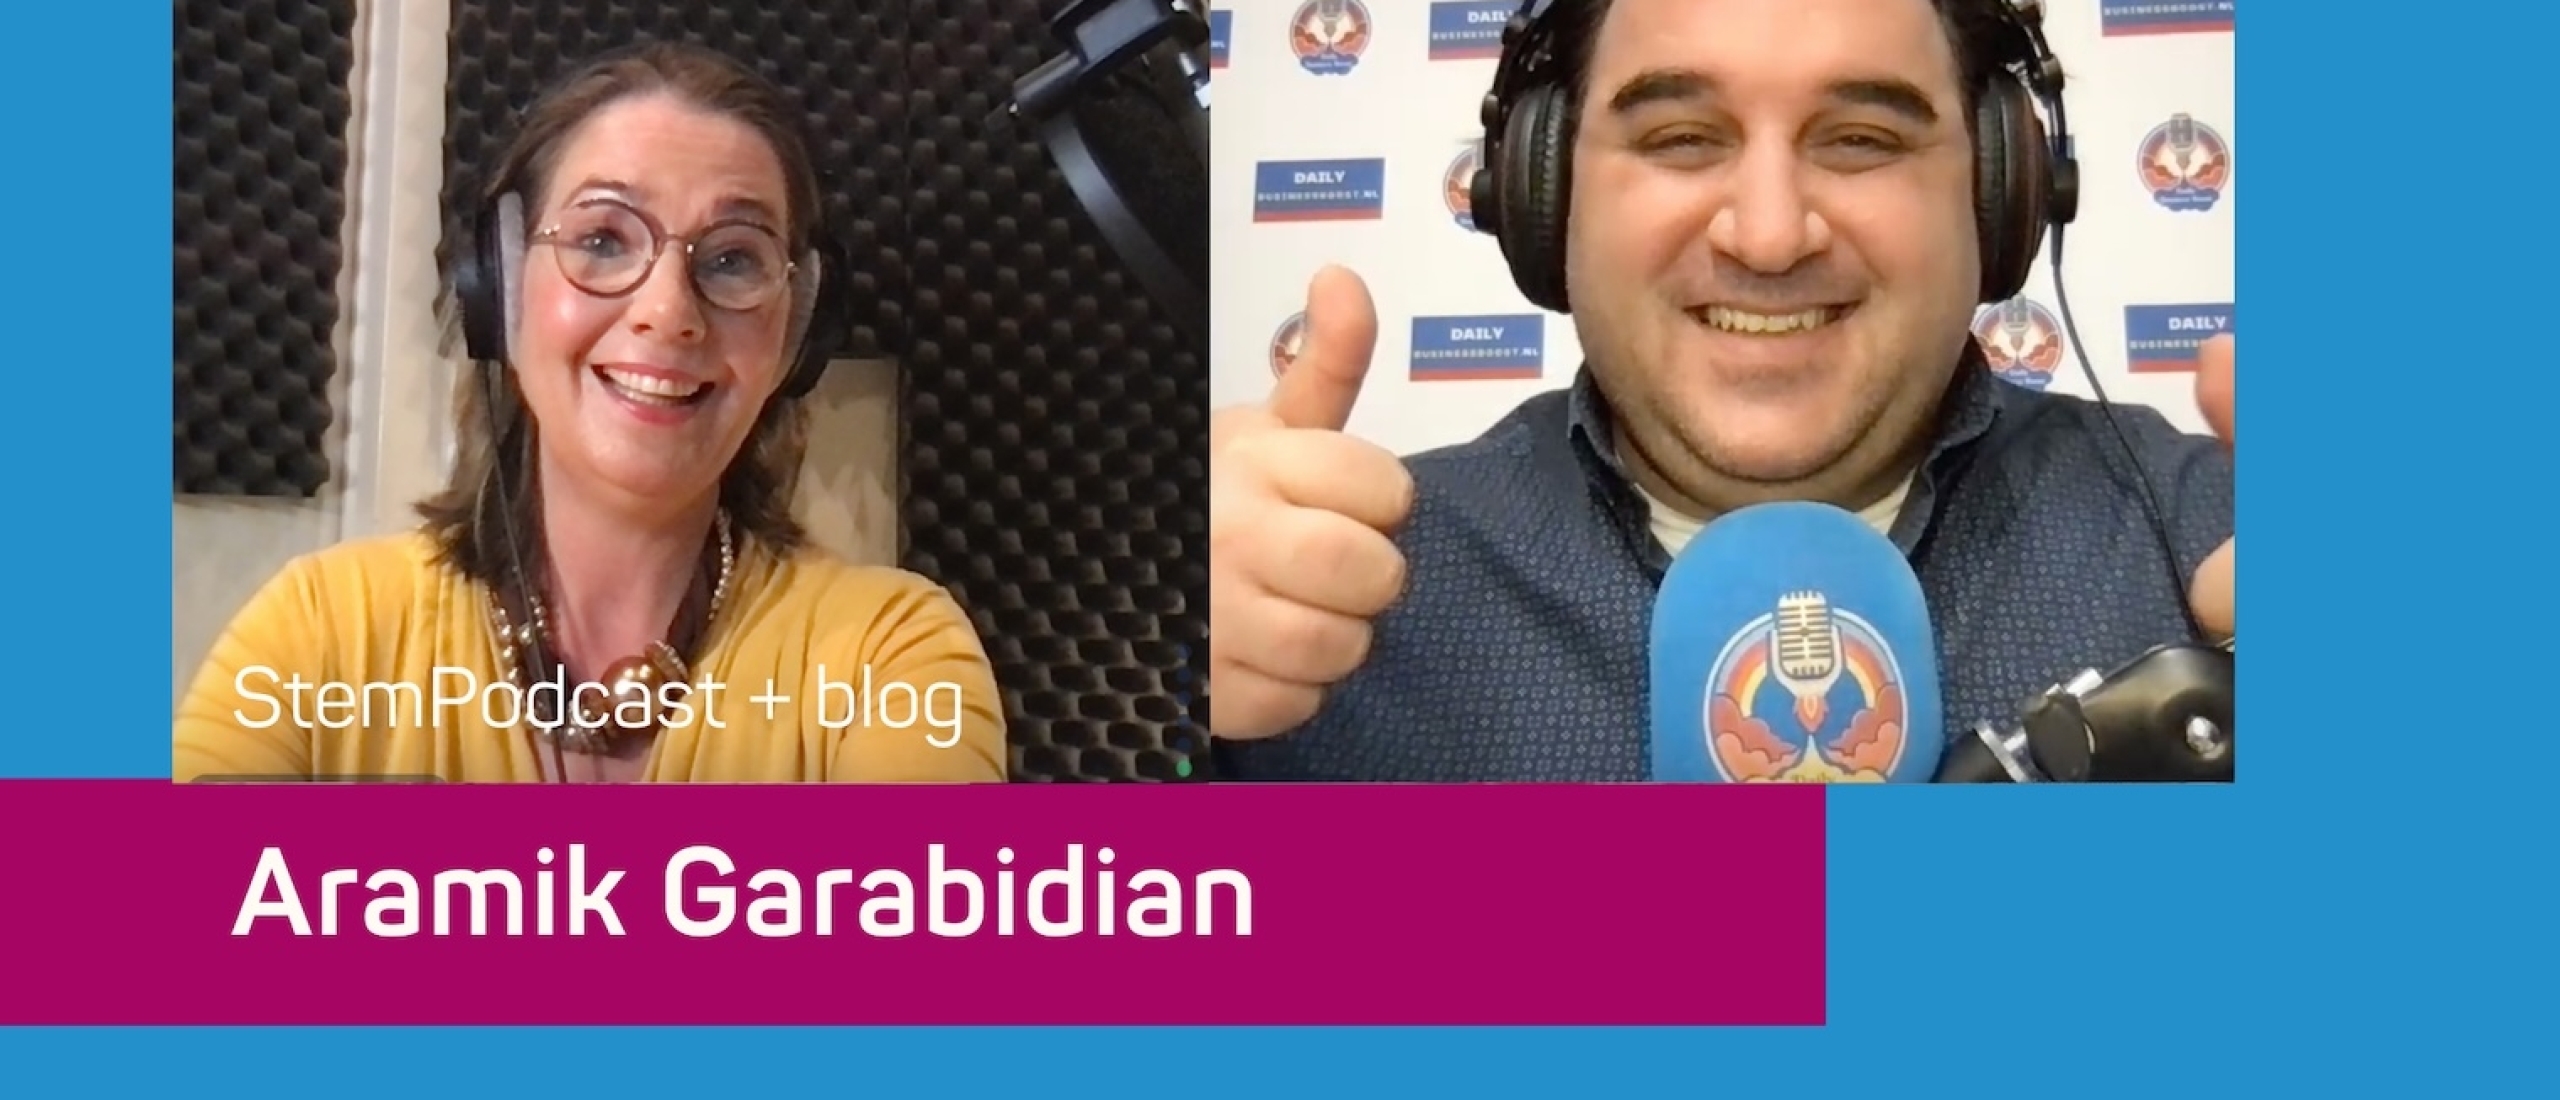 LinkedIn-expert Aramik Garabidian in de StemPodcast: ‘Ik vond podcasten boring: geen publiek of interactie. Ik hou van live’